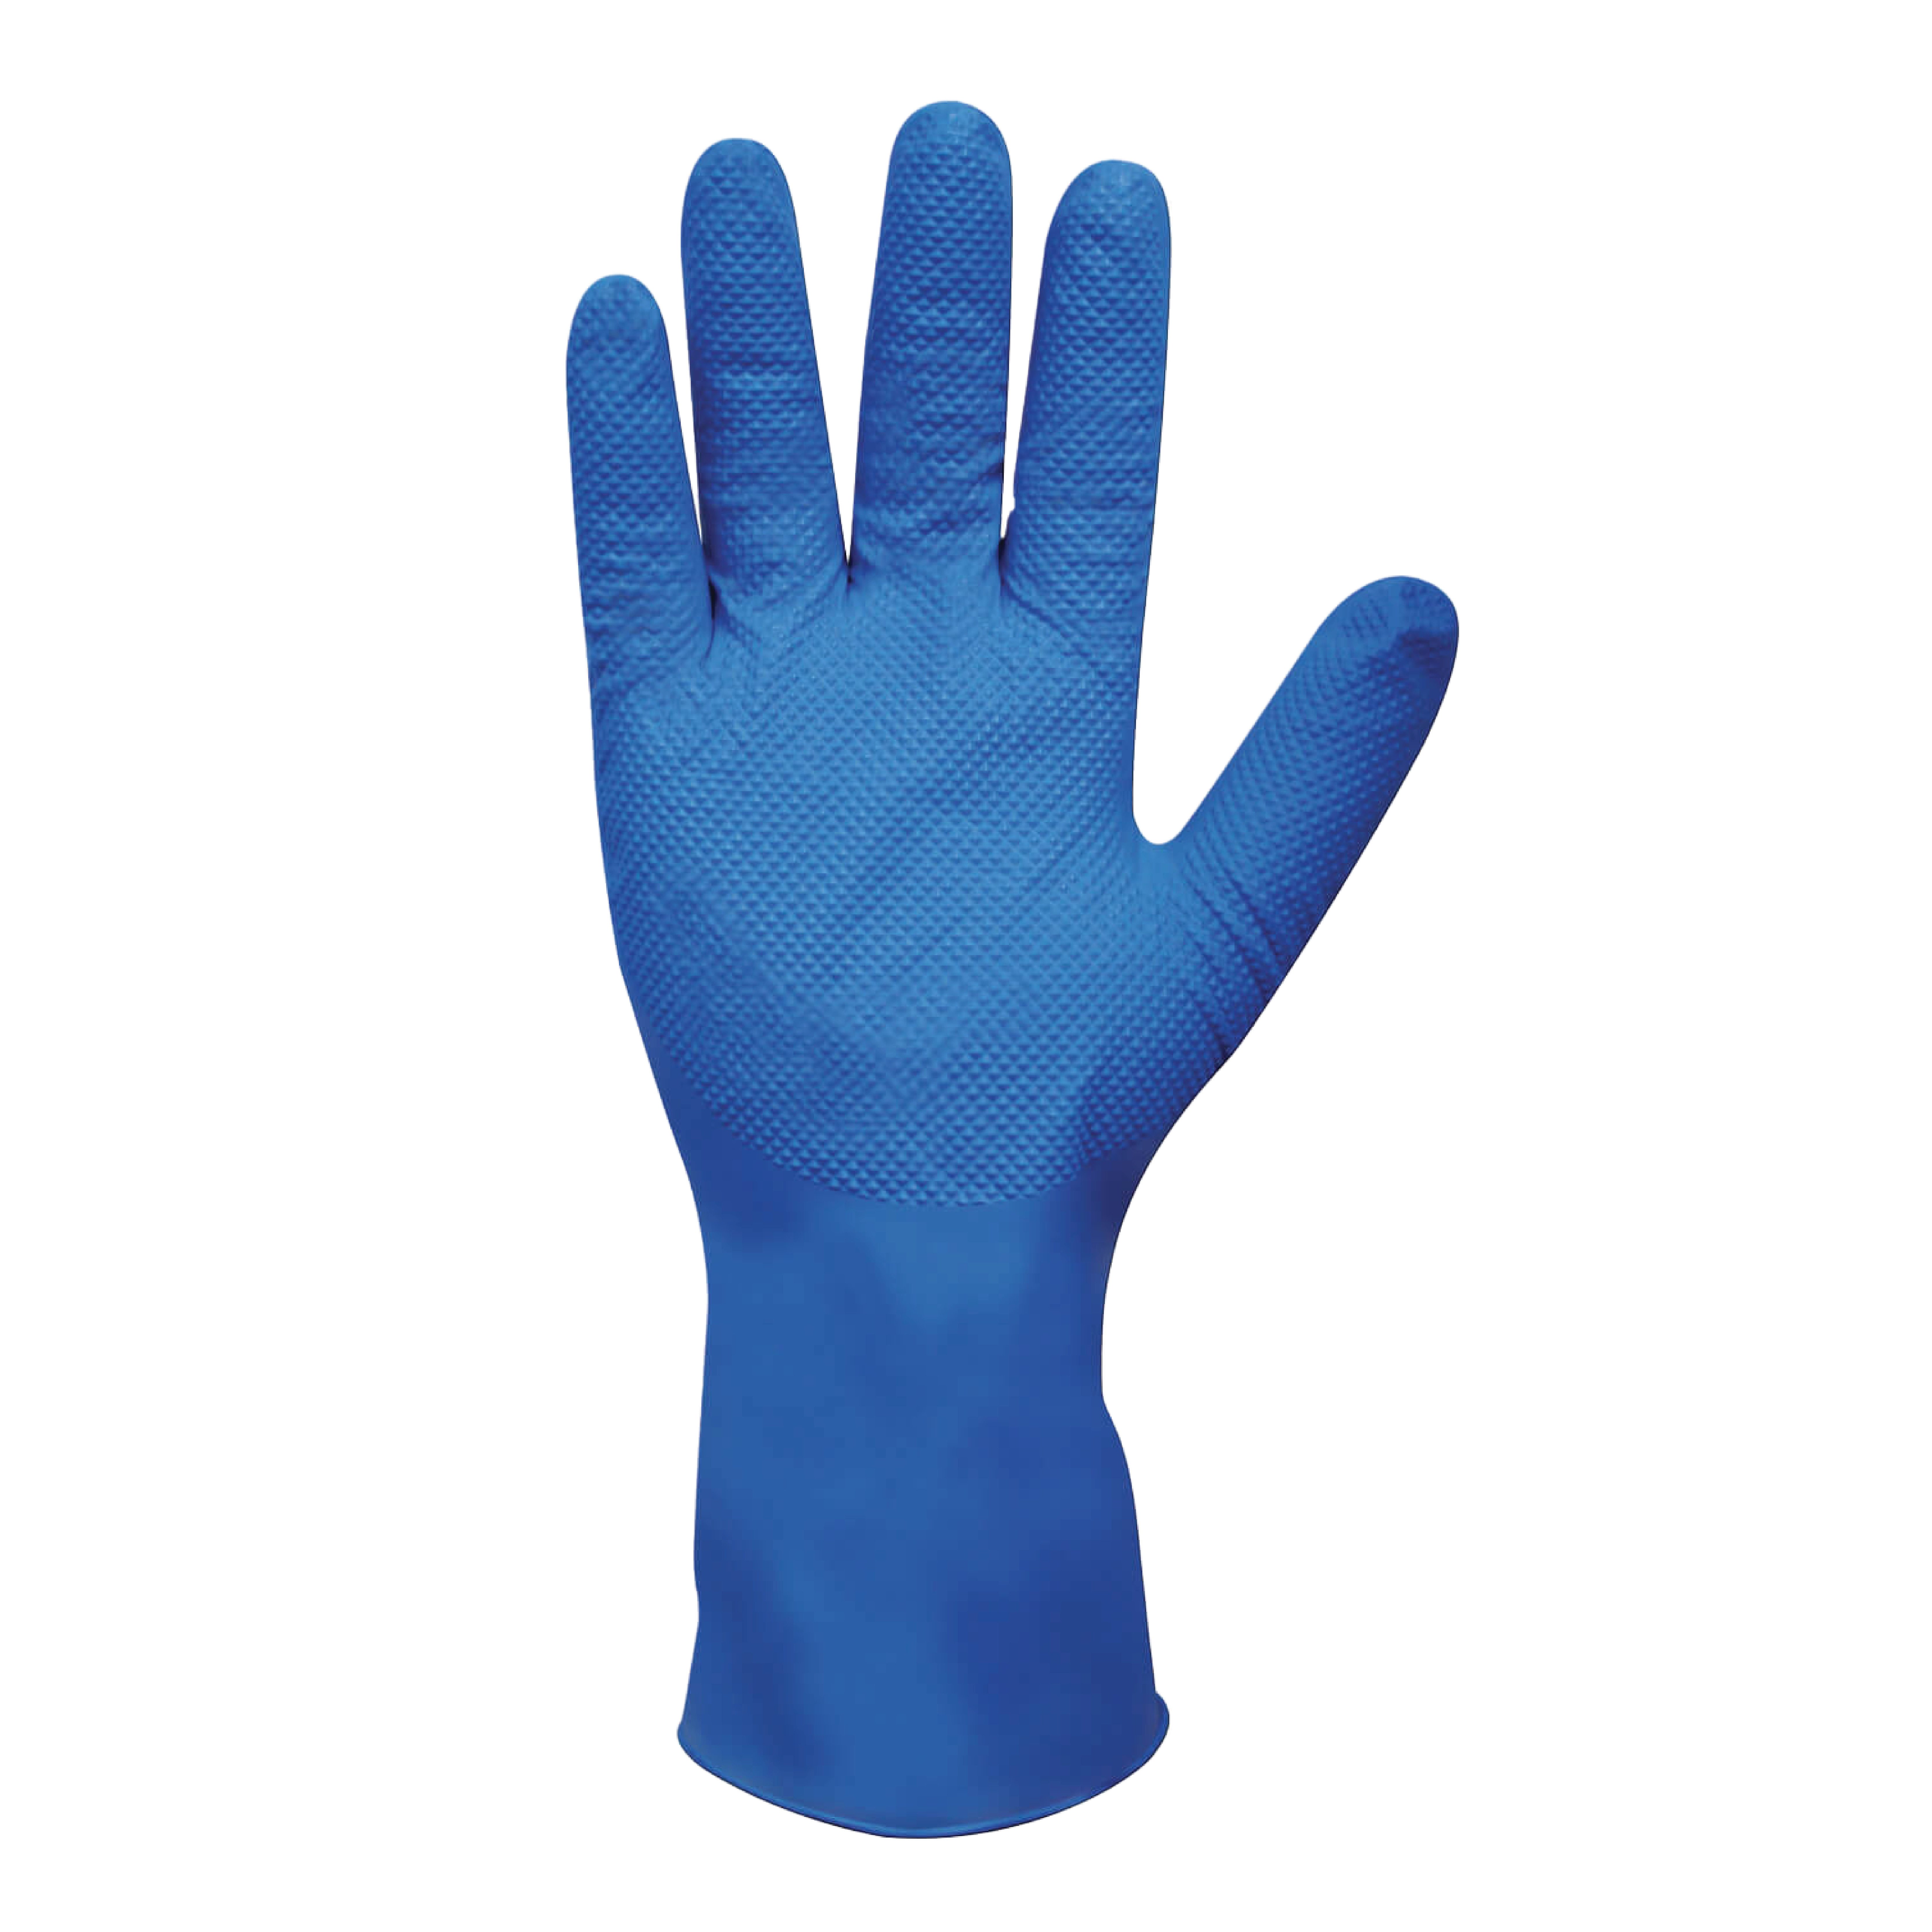 Heavy Duty Nitrile Diamond Grip Long Cuff Powder Free Gloves Blue - XLarge (500/